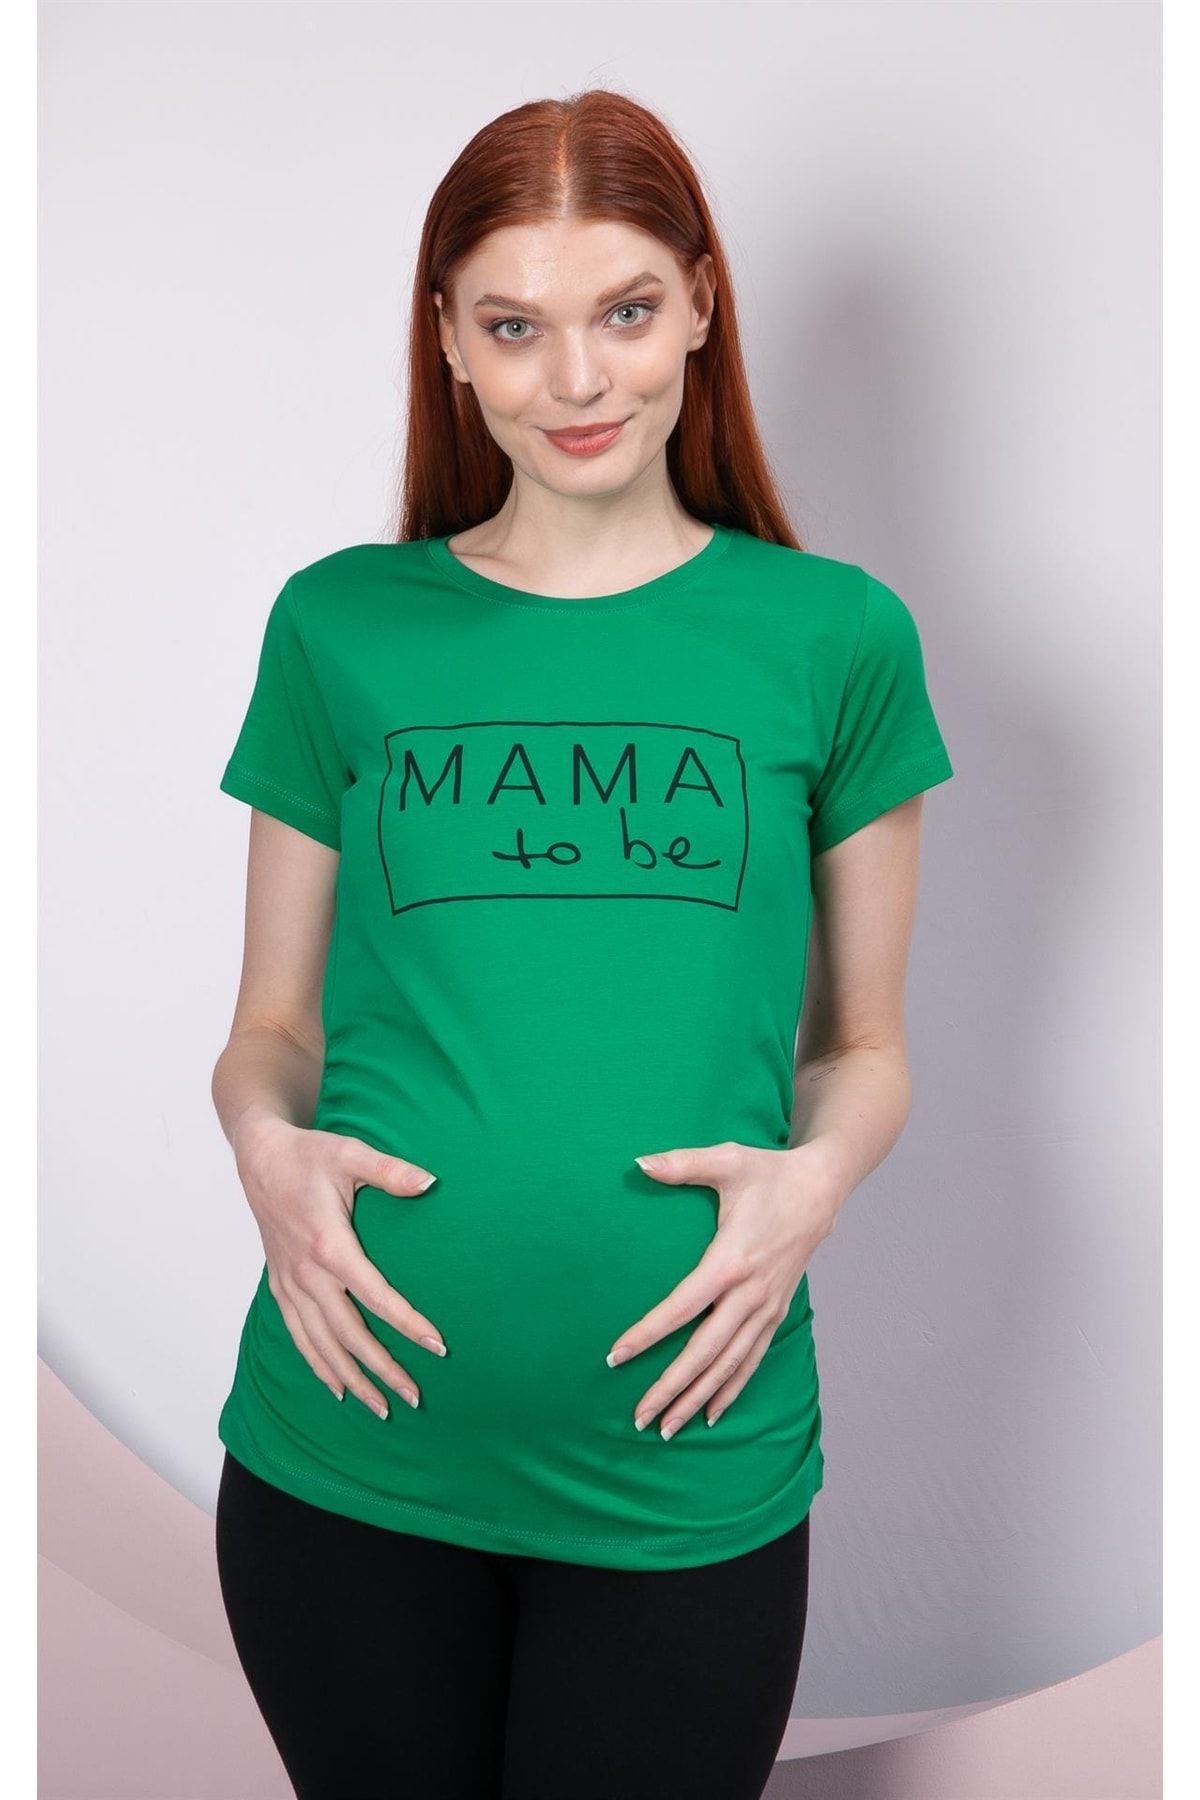 Görsin Hamile Gör&sin Mama To Be Baskılı Çimen Yeşili Hamile Tişört